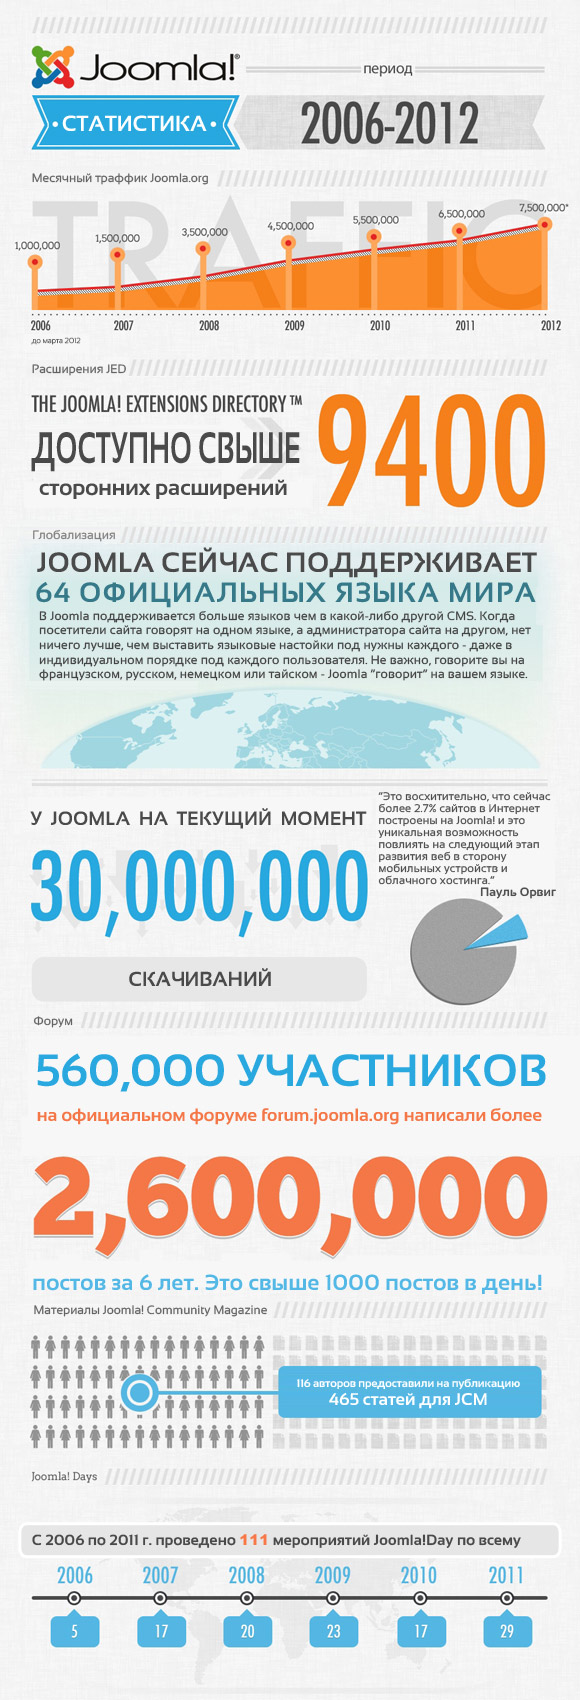 Инфографик Joomla: 2006-20012